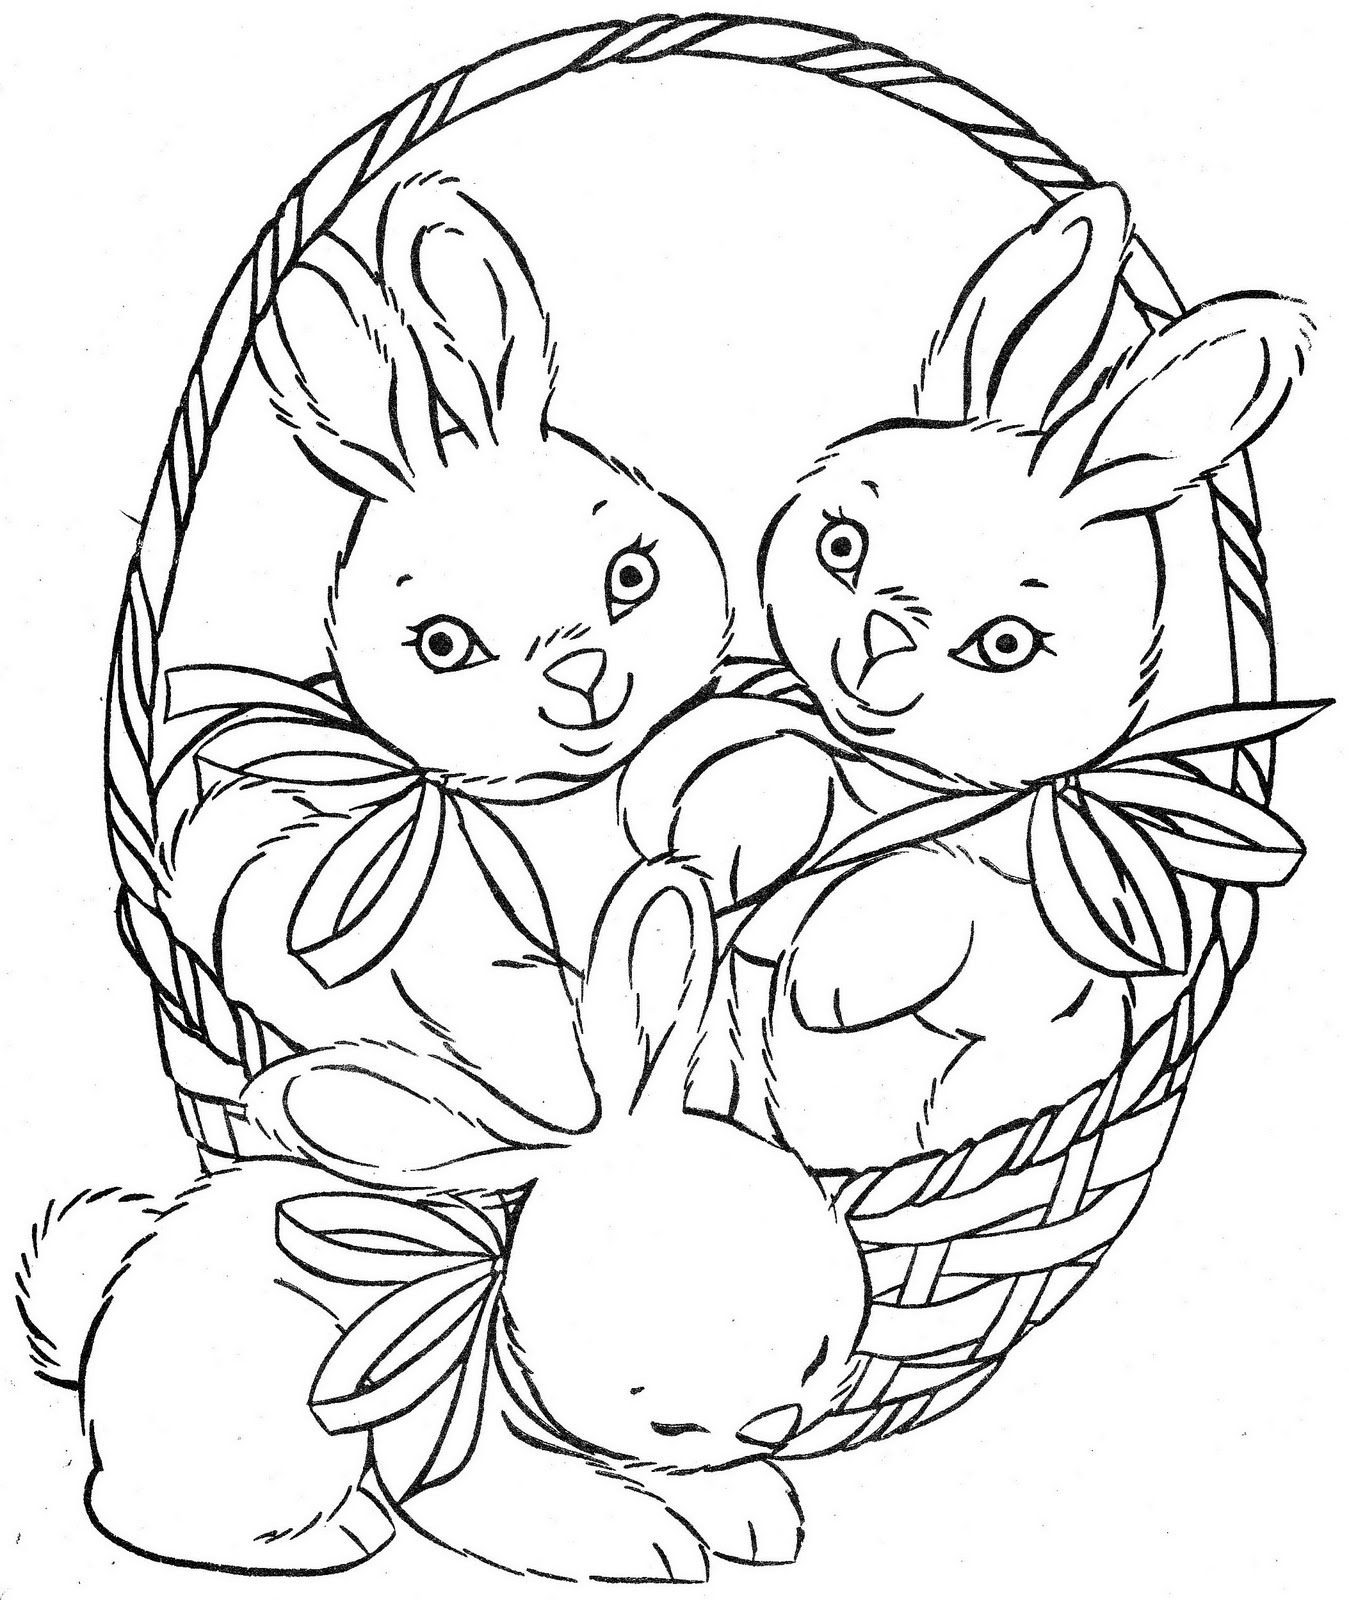 Раскрашиваем пасхальные. Раскраска Пасха для детей. Пасхальный заяц раскраска. Пасхальный кролик раскраска. Раскраски пасхальные для детей.